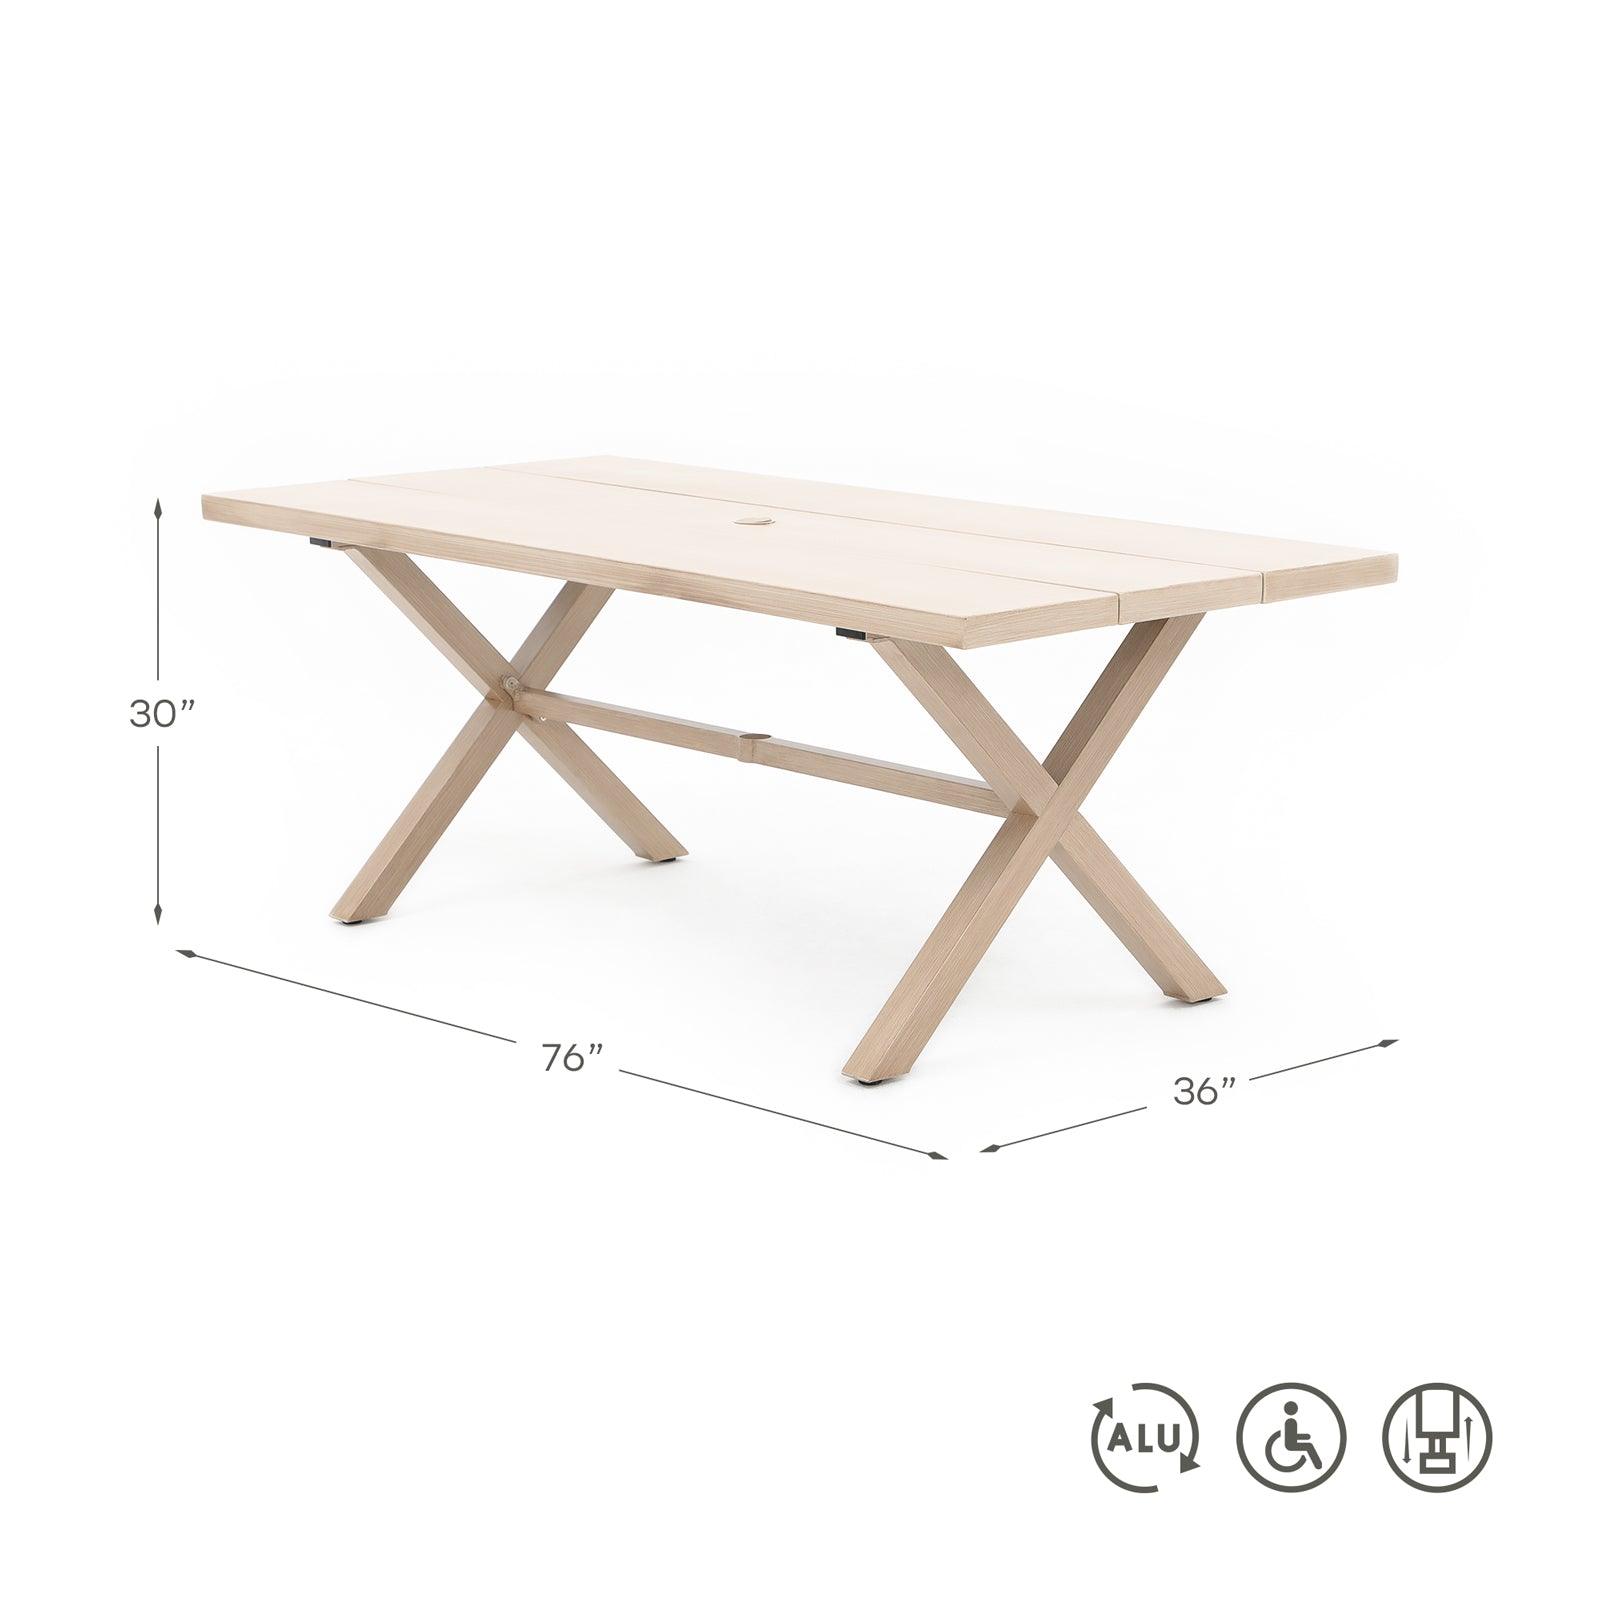 Salina Natural Aluminum Rectangular Dining Table for 8 with Umbrella Hole, X-Shaped Leg Design, dimension- Jardina Furniture#color_Natural